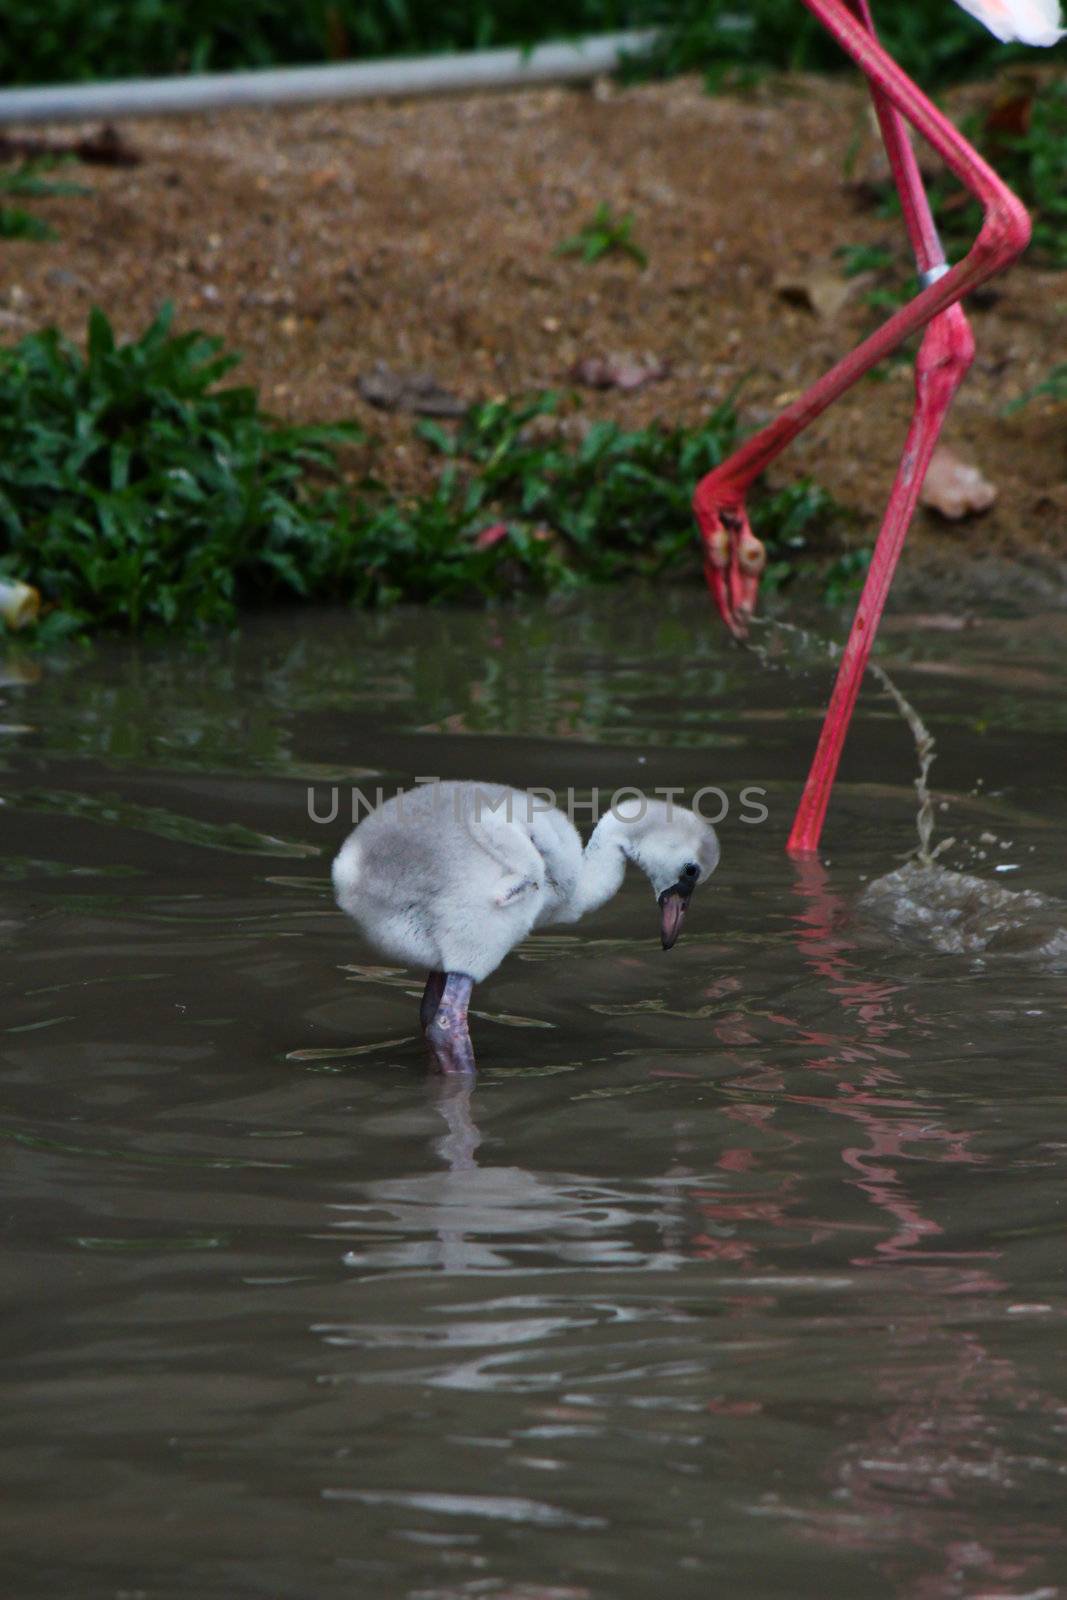 baby pink flamingos (Phoenicopterus ruber ruber) by bajita111122